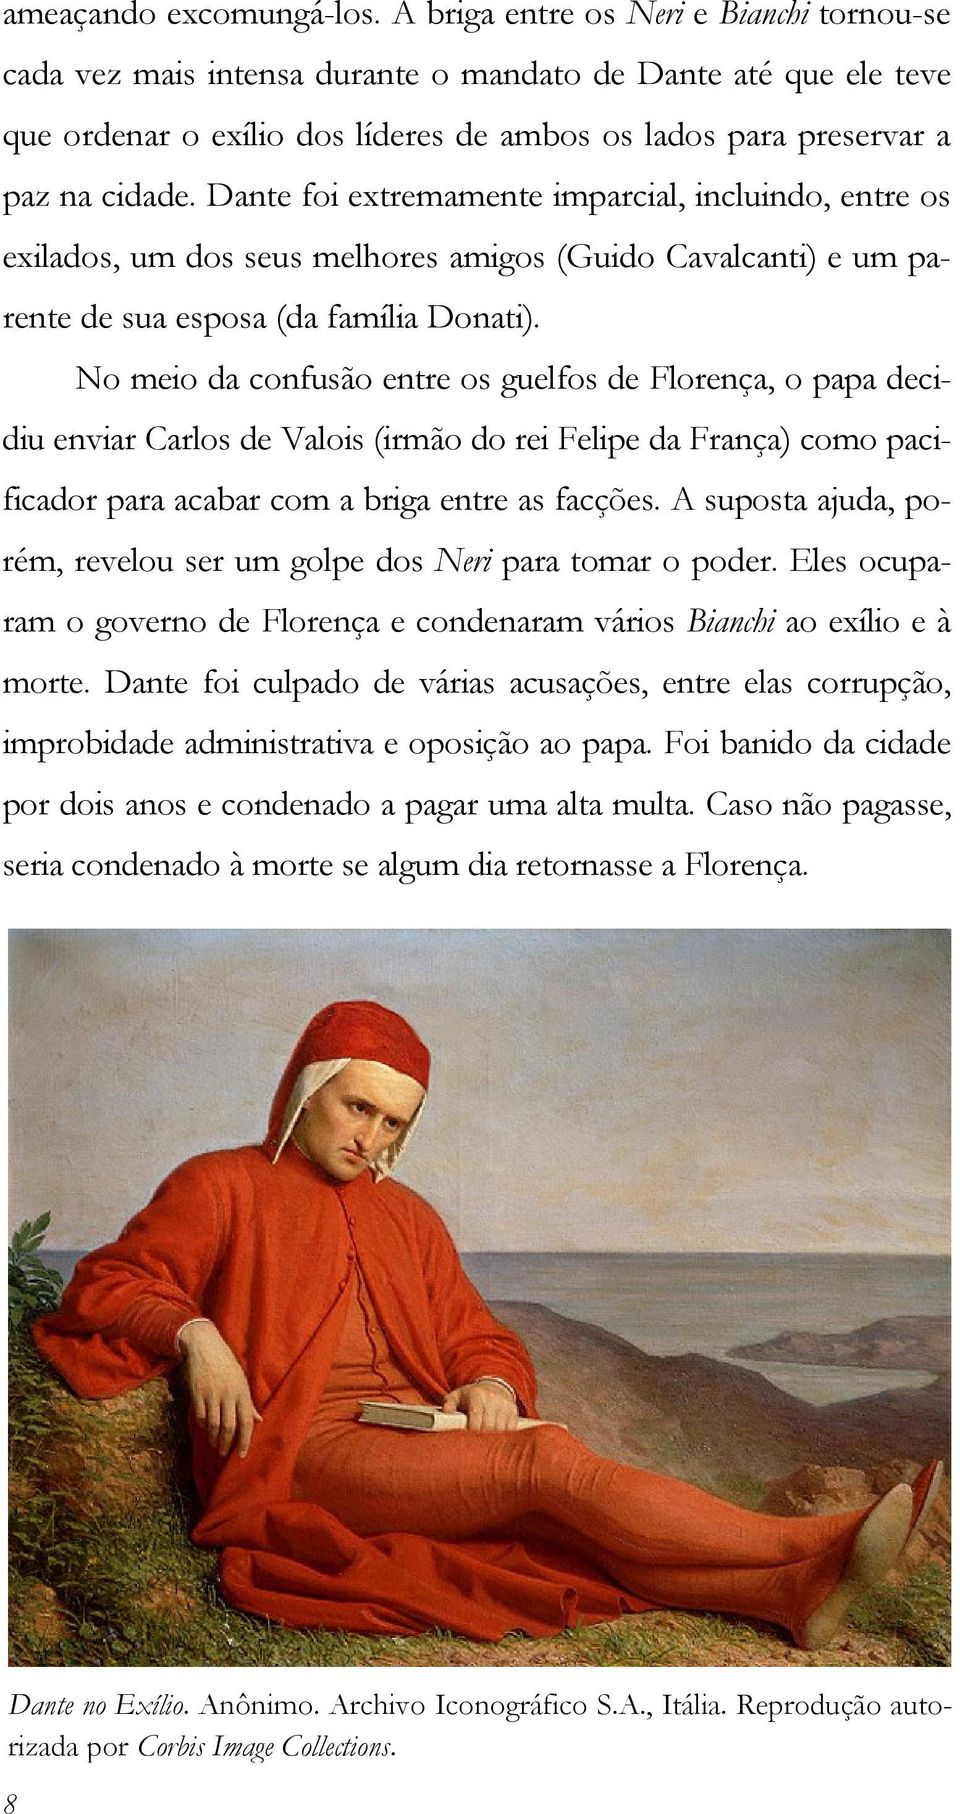 Dante foi extremamente imparcial, incluindo, entre os exilados, um dos seus melhores amigos (Guido Cavalcanti) e um parente de sua esposa (da família Donati).